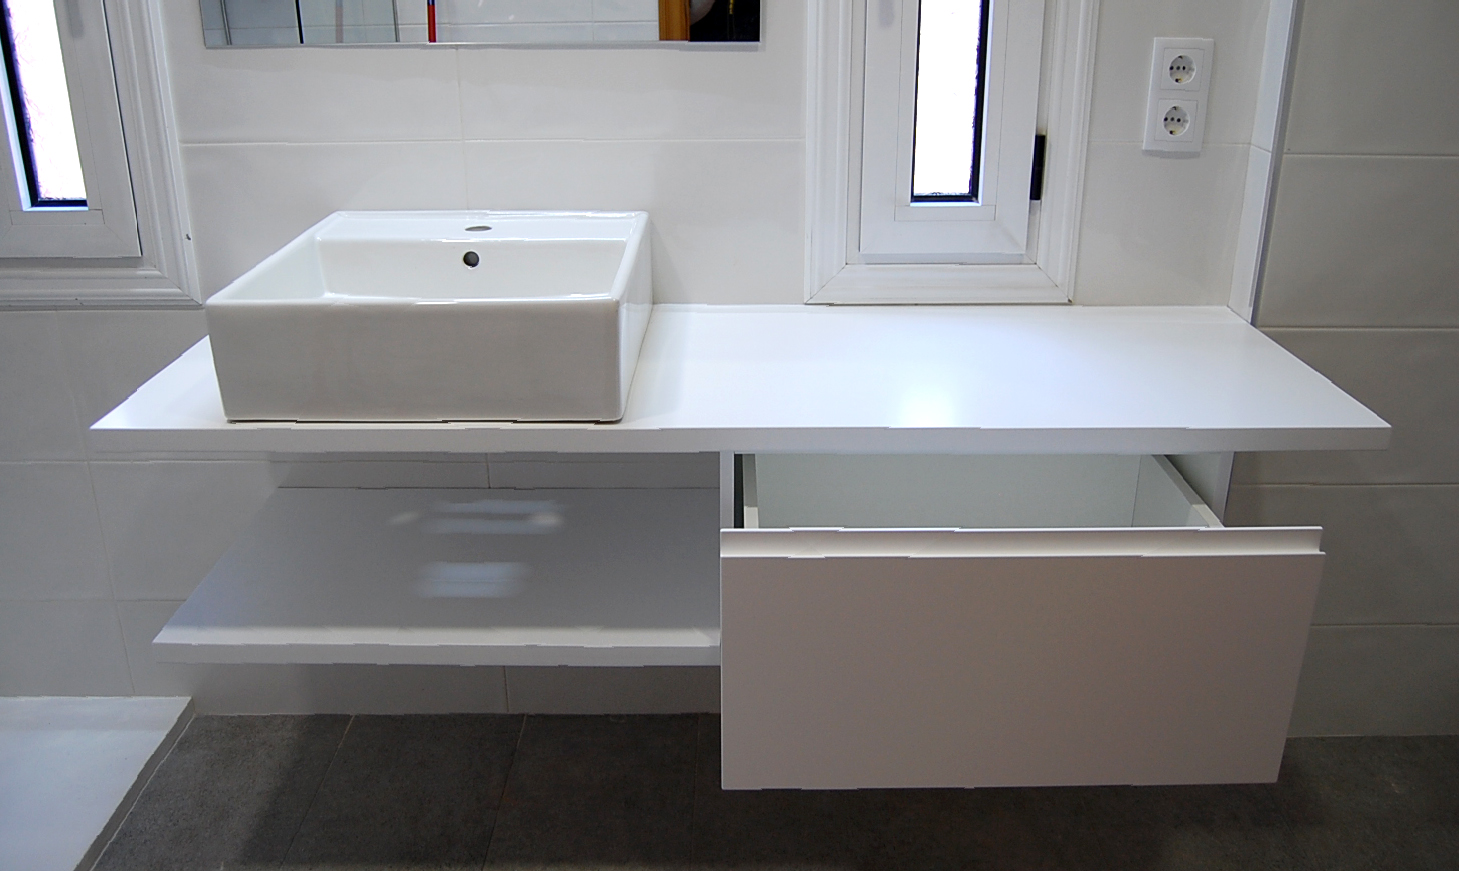 Mueble de baño a medida suspendido lacado blanco satinado con uñero. Encimera hidrófuga, cajón con guía de extracción total con freno y estante.